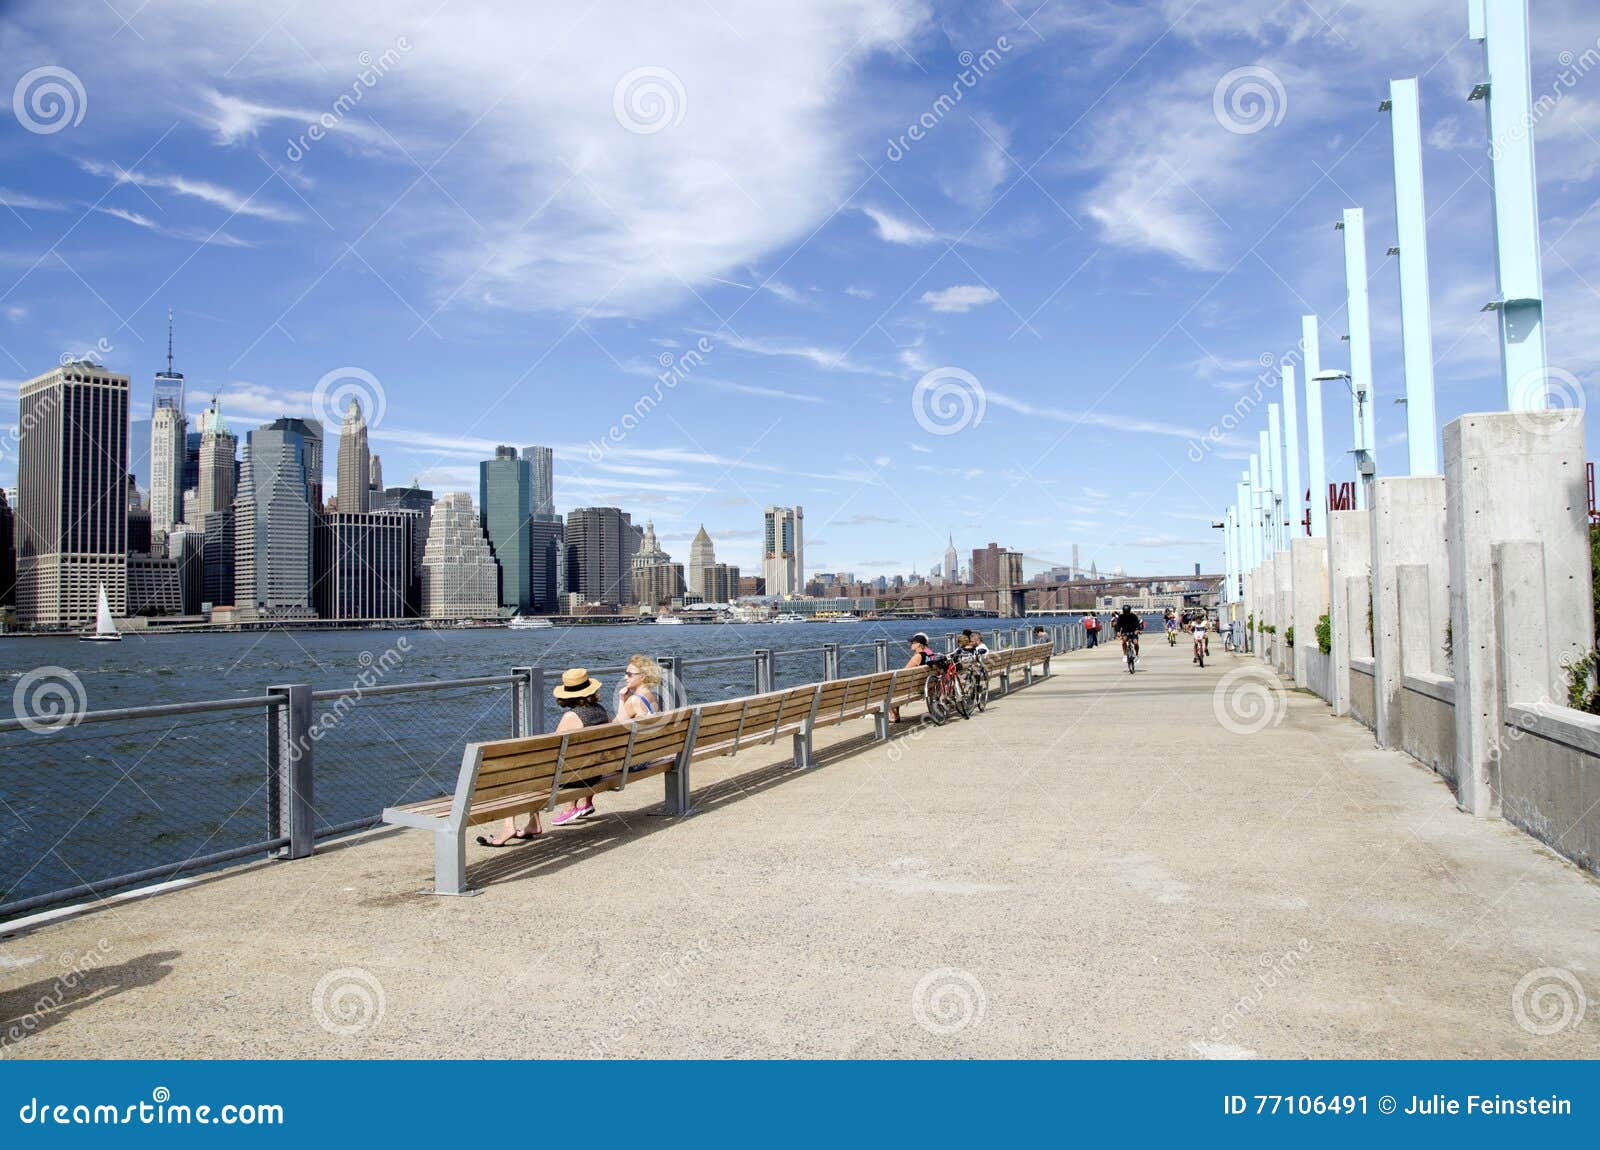 Pier 1 - Brooklyn Bridge Park